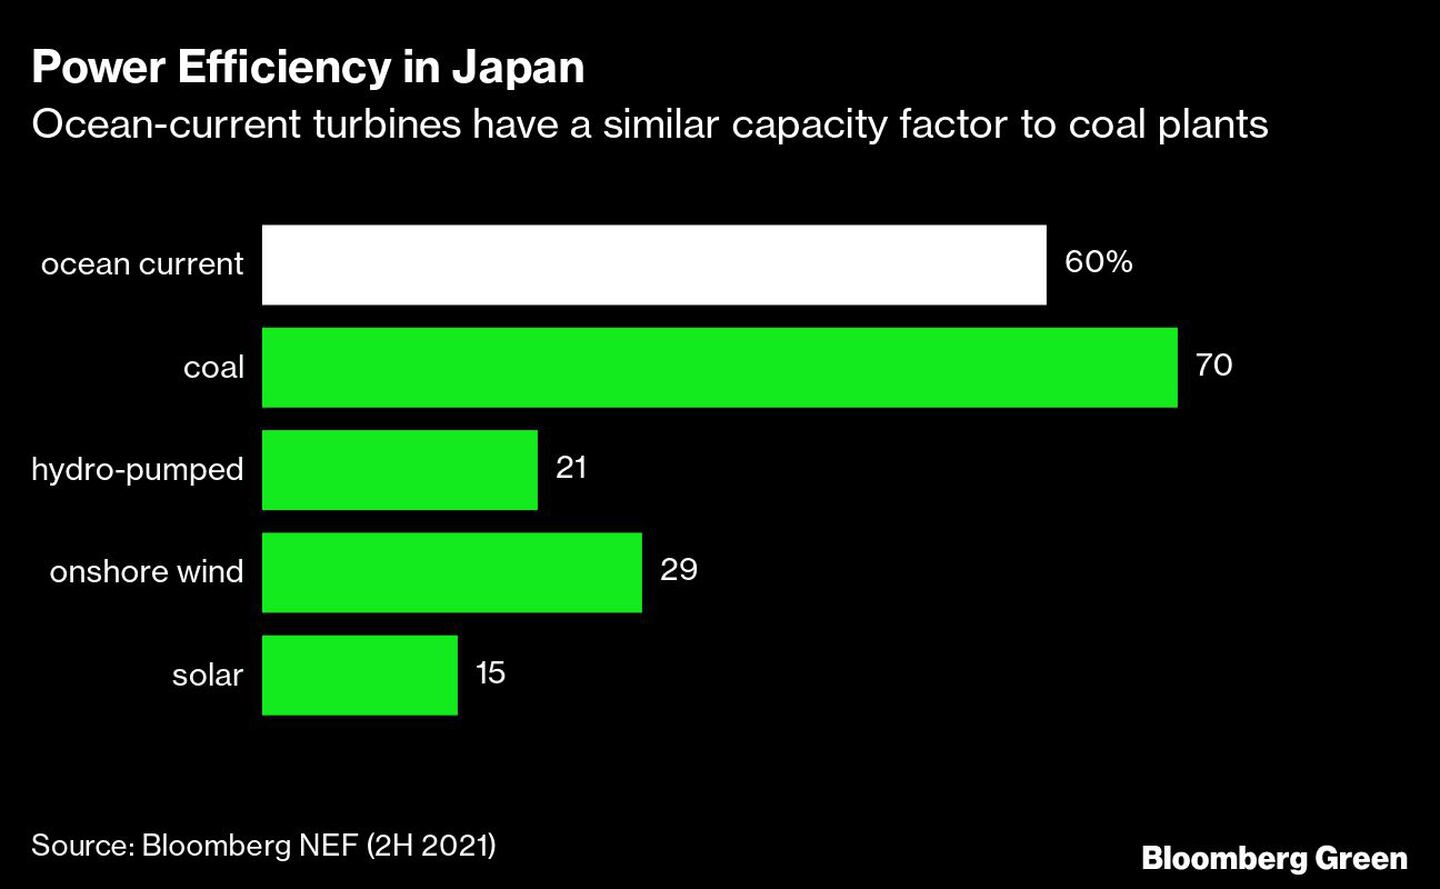 Eficiencia energética en Japón
Las turbinas de corriente marina tienen un factor de capacidad similar al de las centrales de carbón
De arriba a abajo: 
Corriente marina, carbón, hidrobomba, eólica terrestre, solardfd